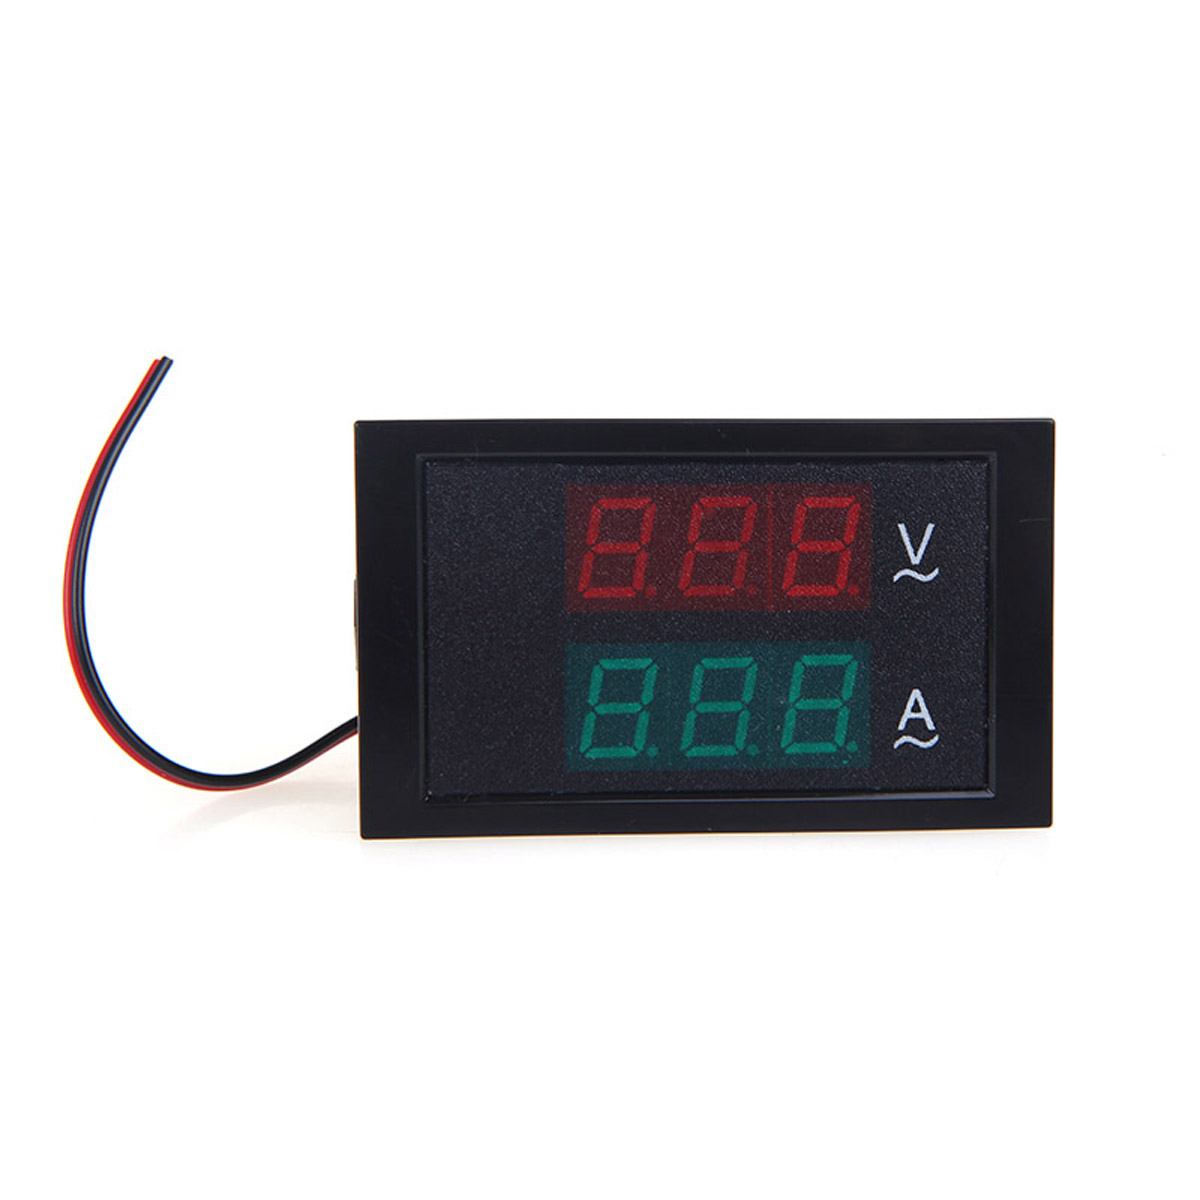 DL85-2042-Digital-LED-Voltage-Meter-Ammeter-Voltmeter-with-Current-Transformer-AC80-300V-0-1000A-Dua-1443868